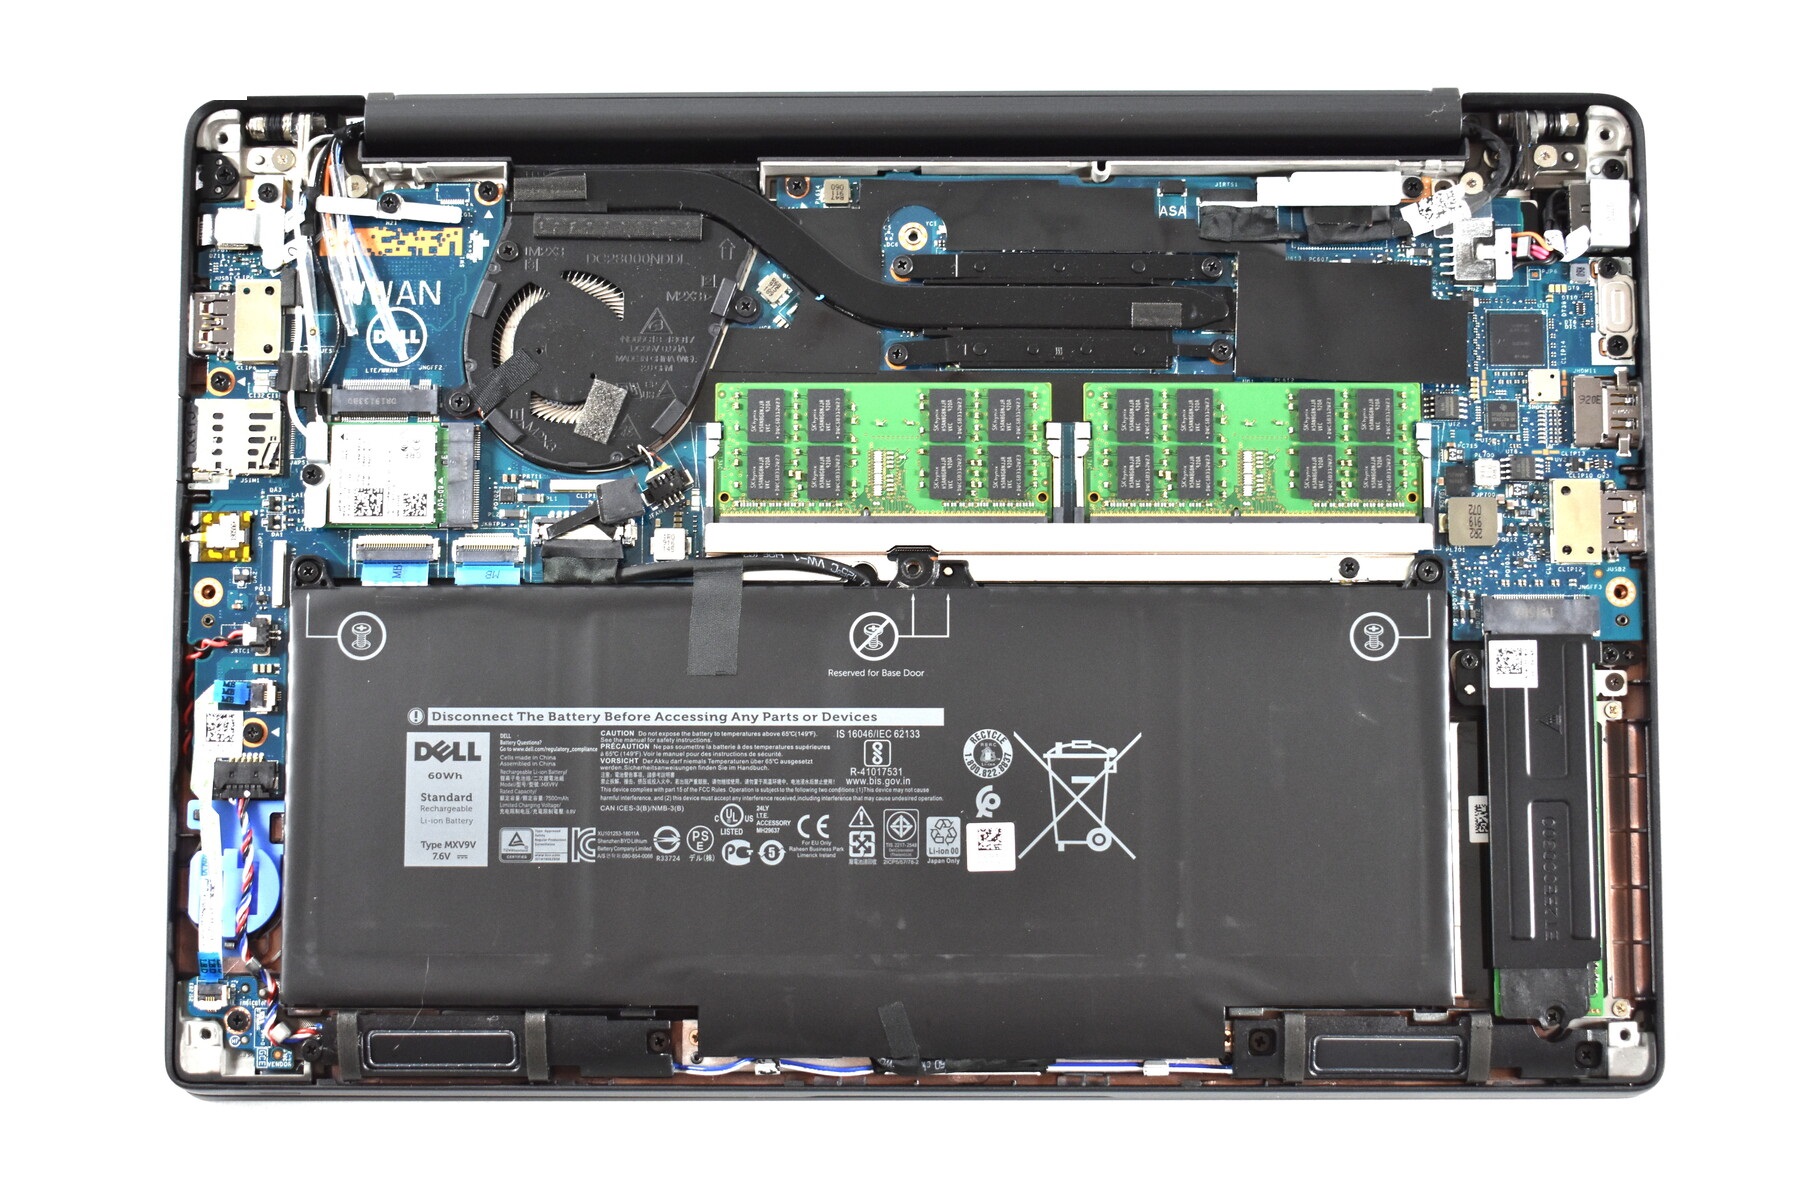 Đánh giá laptop Dell Latitude 7300: Chưa khai thác hết, Chuyên trang tư vấn về laptop